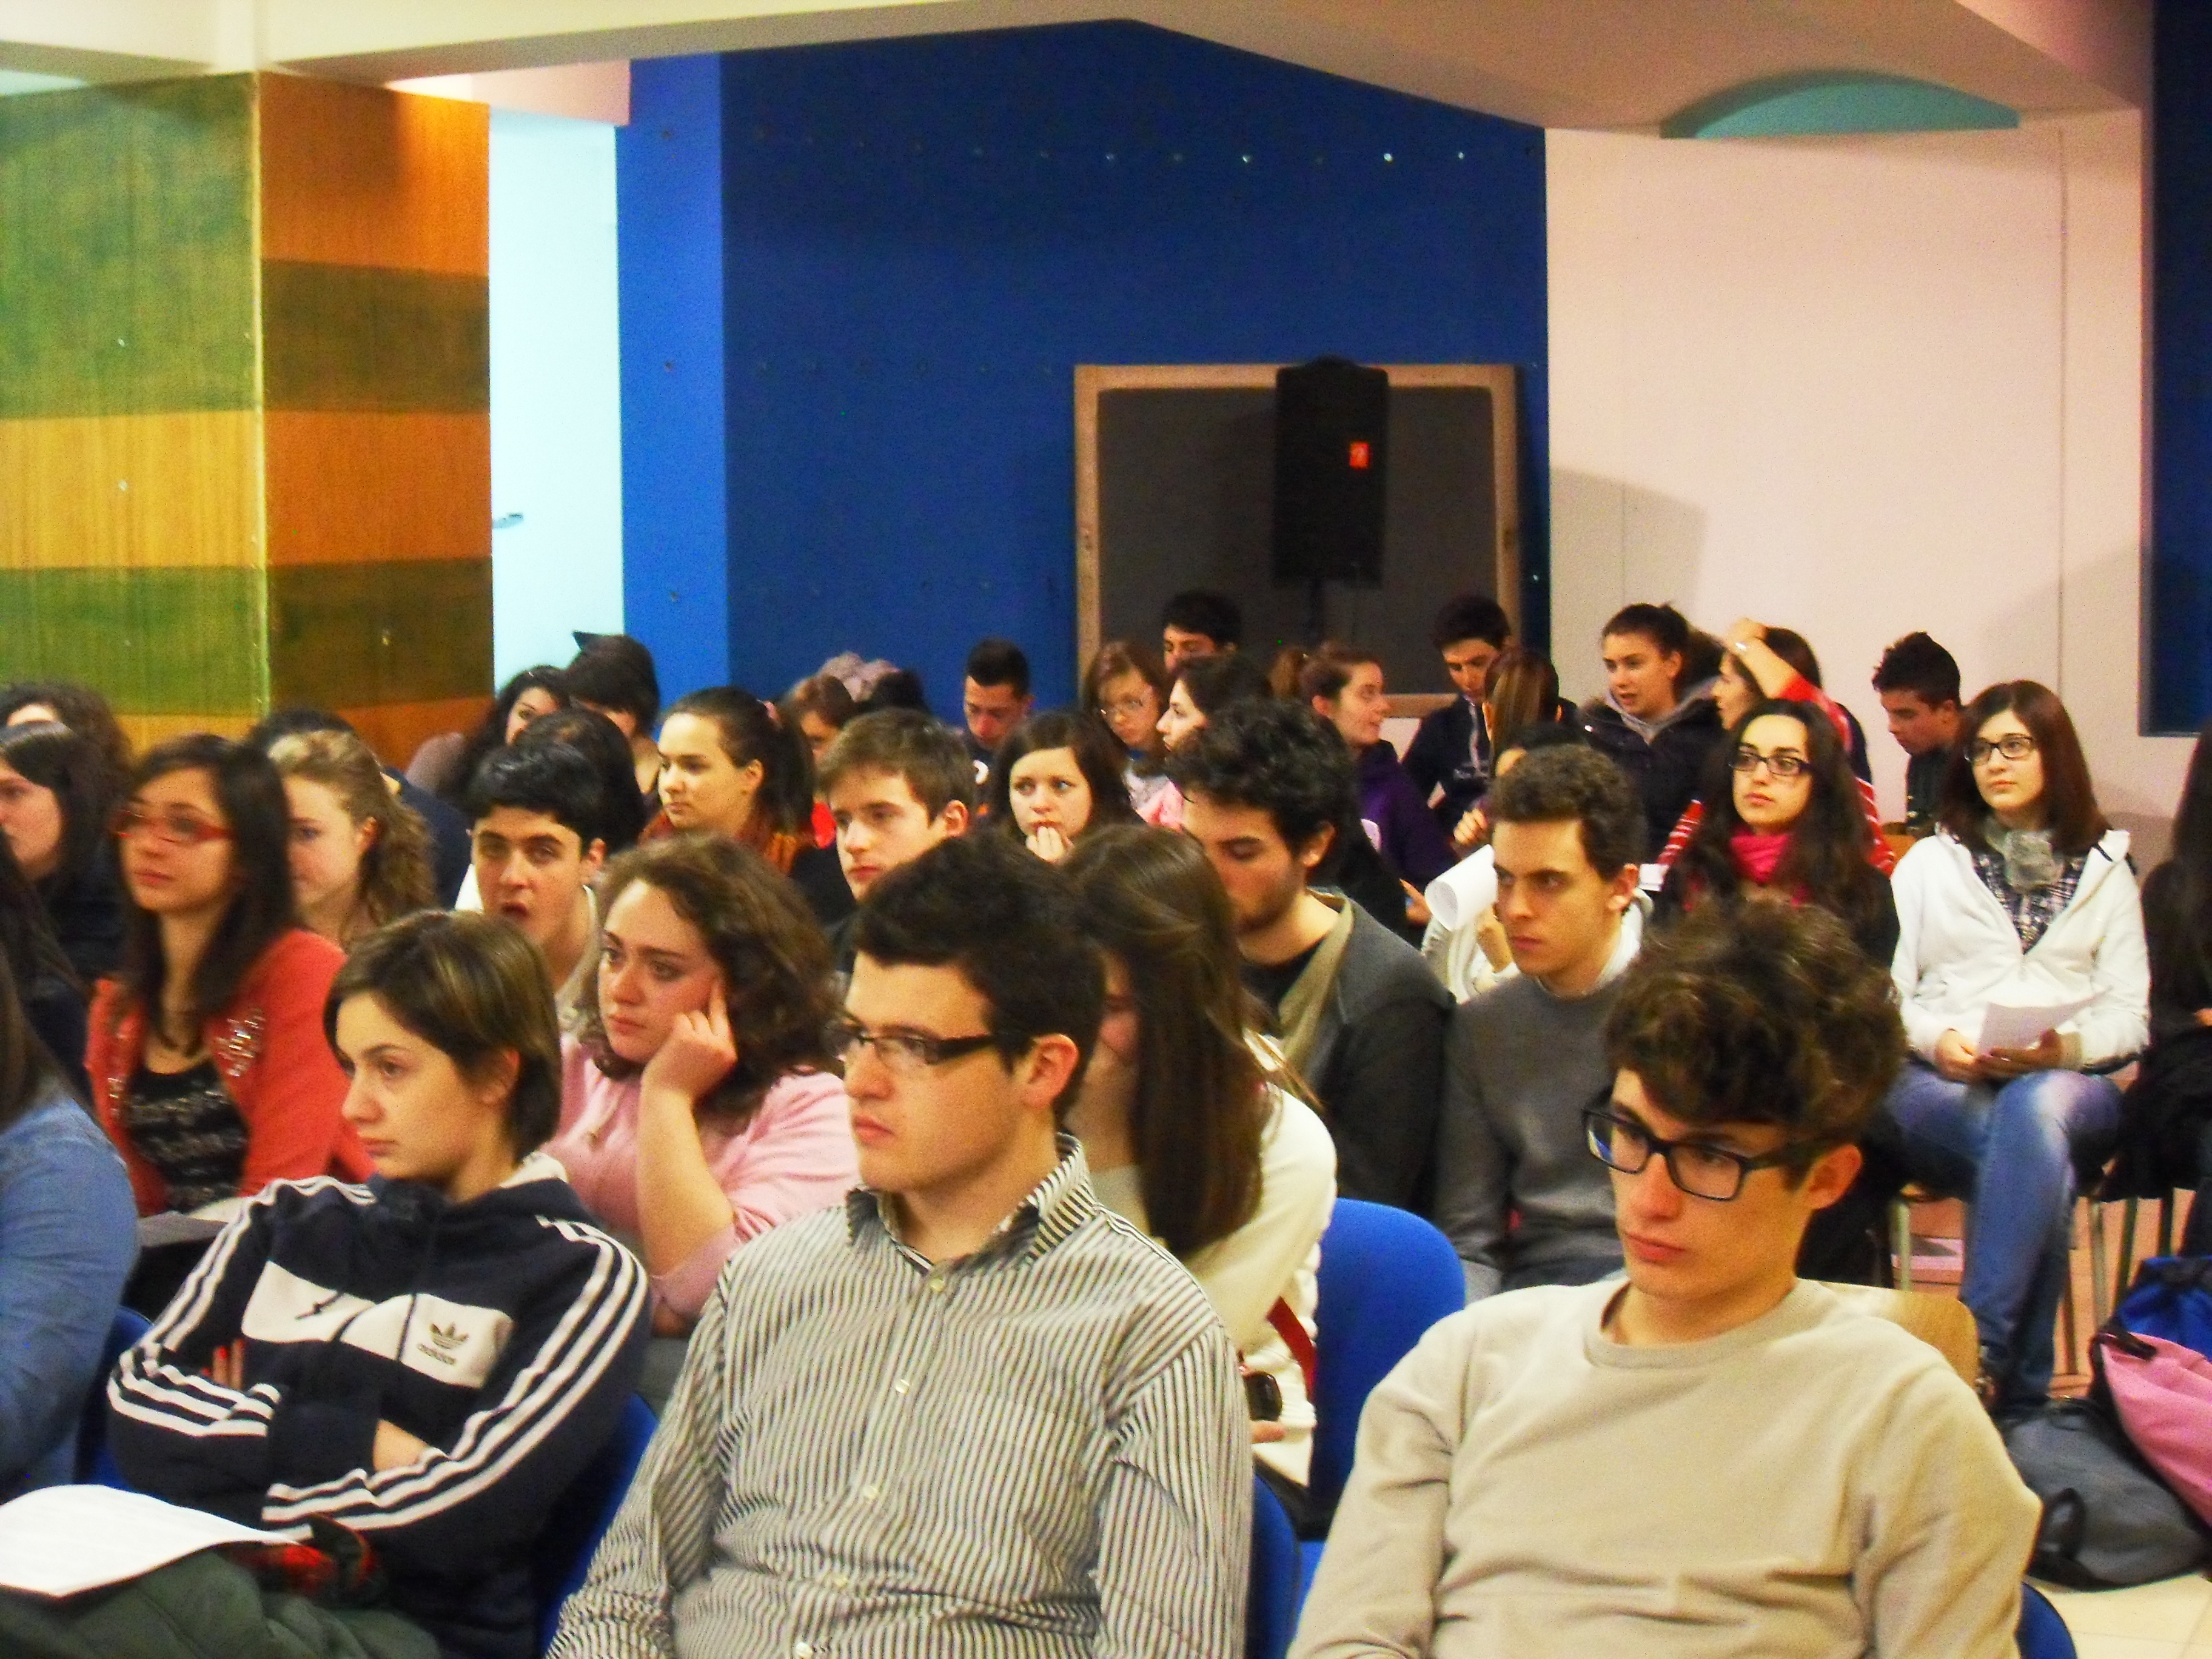 Le foto dell’incontro con gli studenti del Liceo Scientifico “Pier Paolo Pasolini” di Potenza